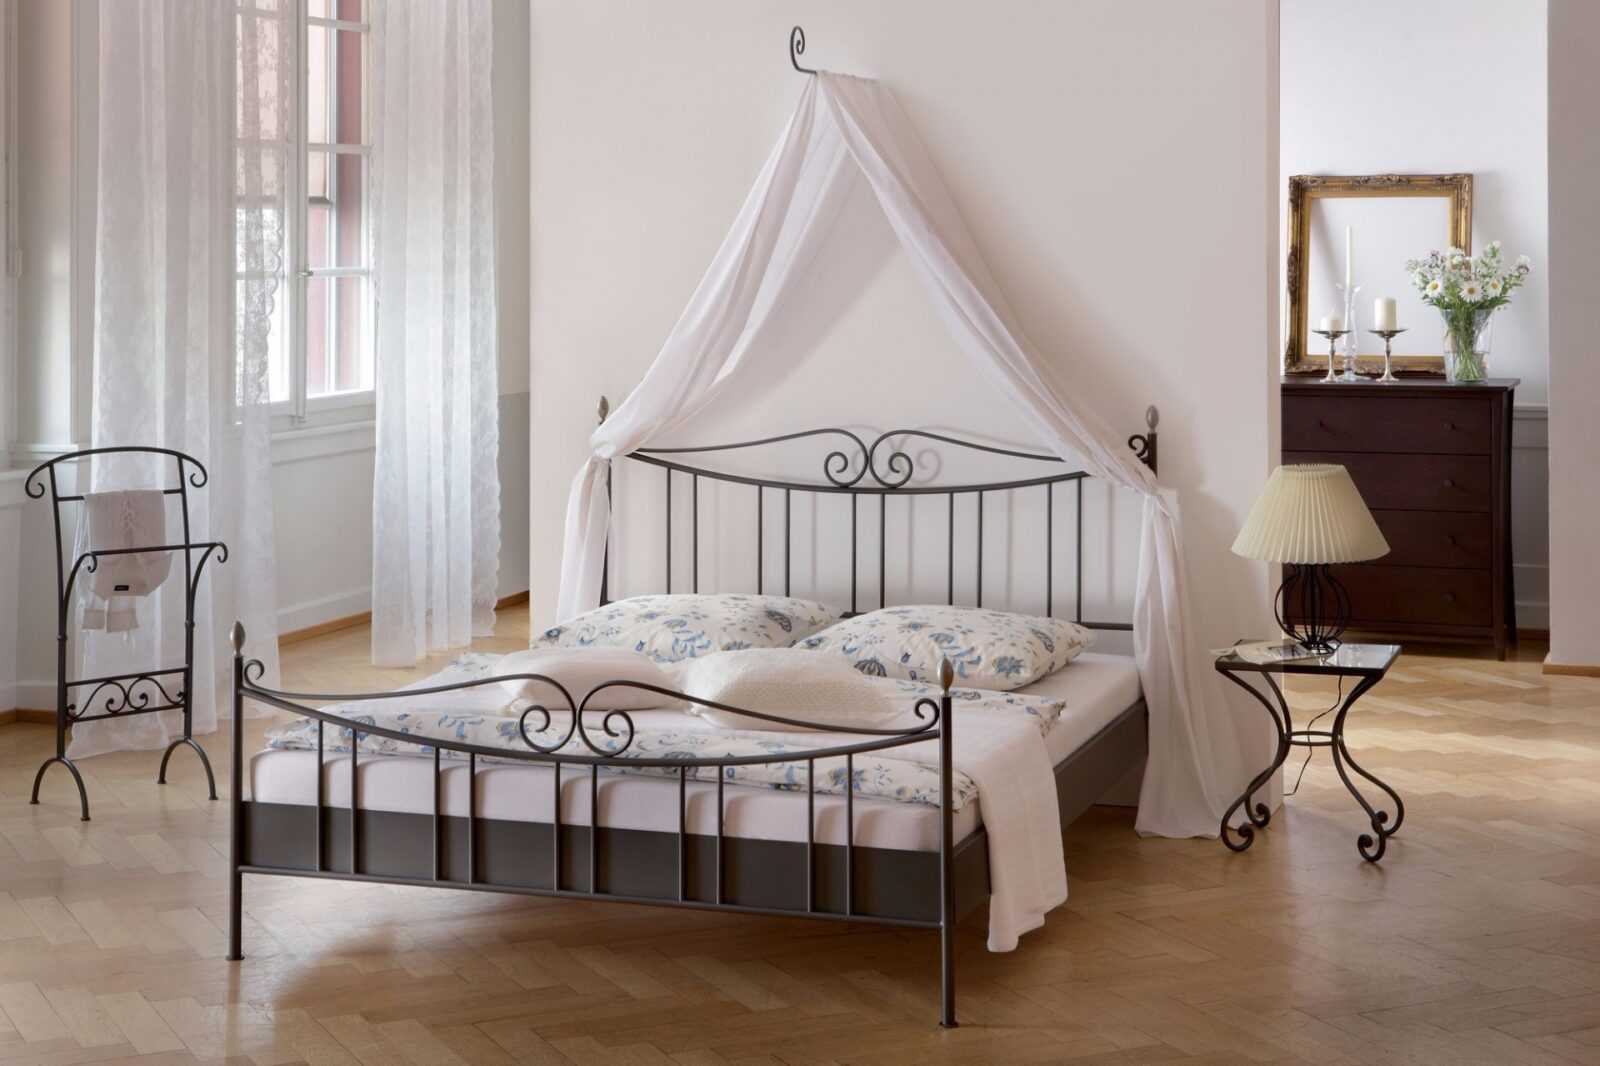 Роскошным дизайном обладают металлические кровати с балдахином